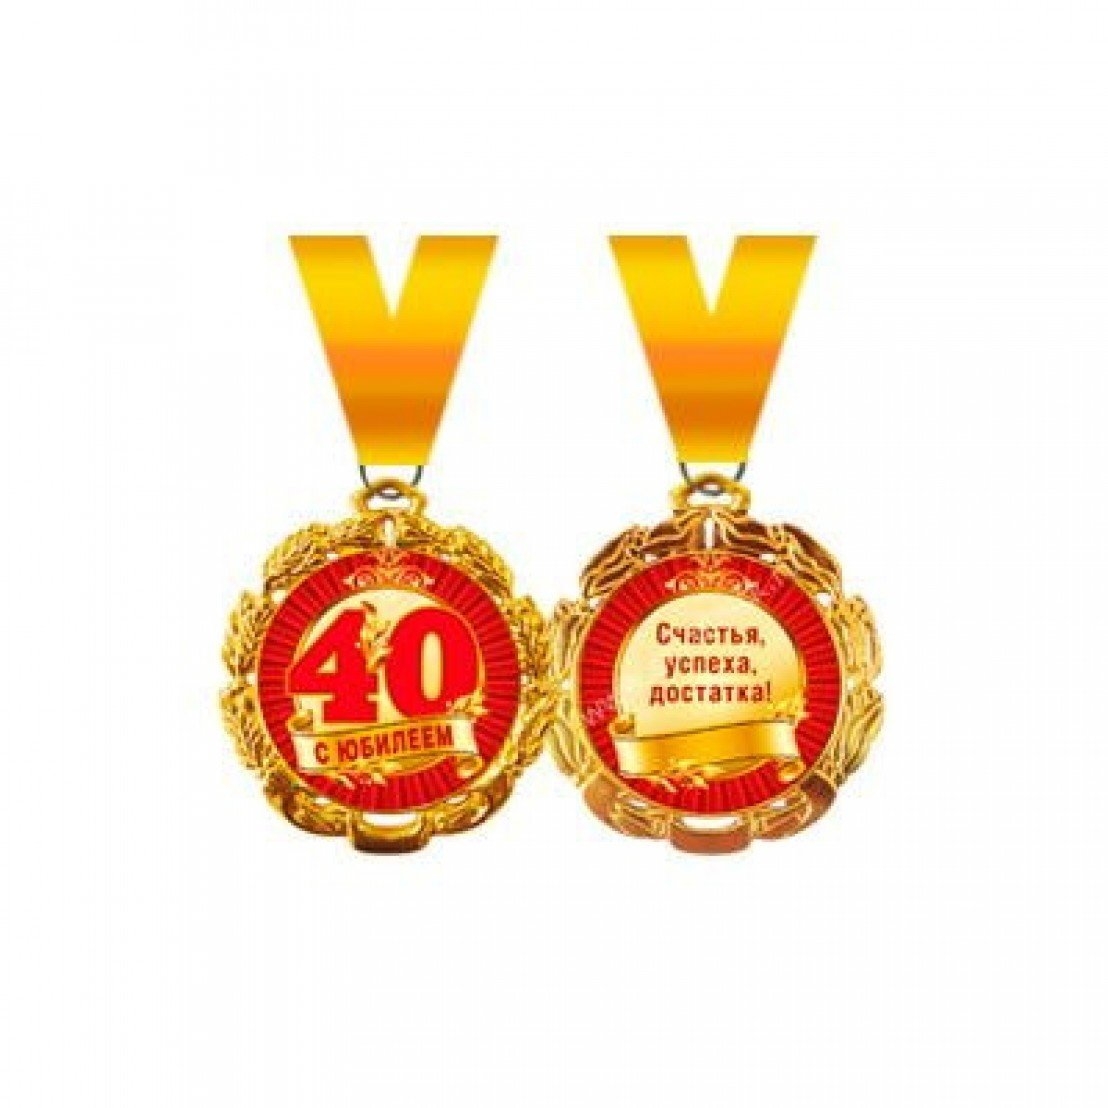 Куму 50 лет поздравления. Медаль с юбилеем. Медаль *с днем рождения*. Медальки на юбилей. Медаль 40 лет юбилей.